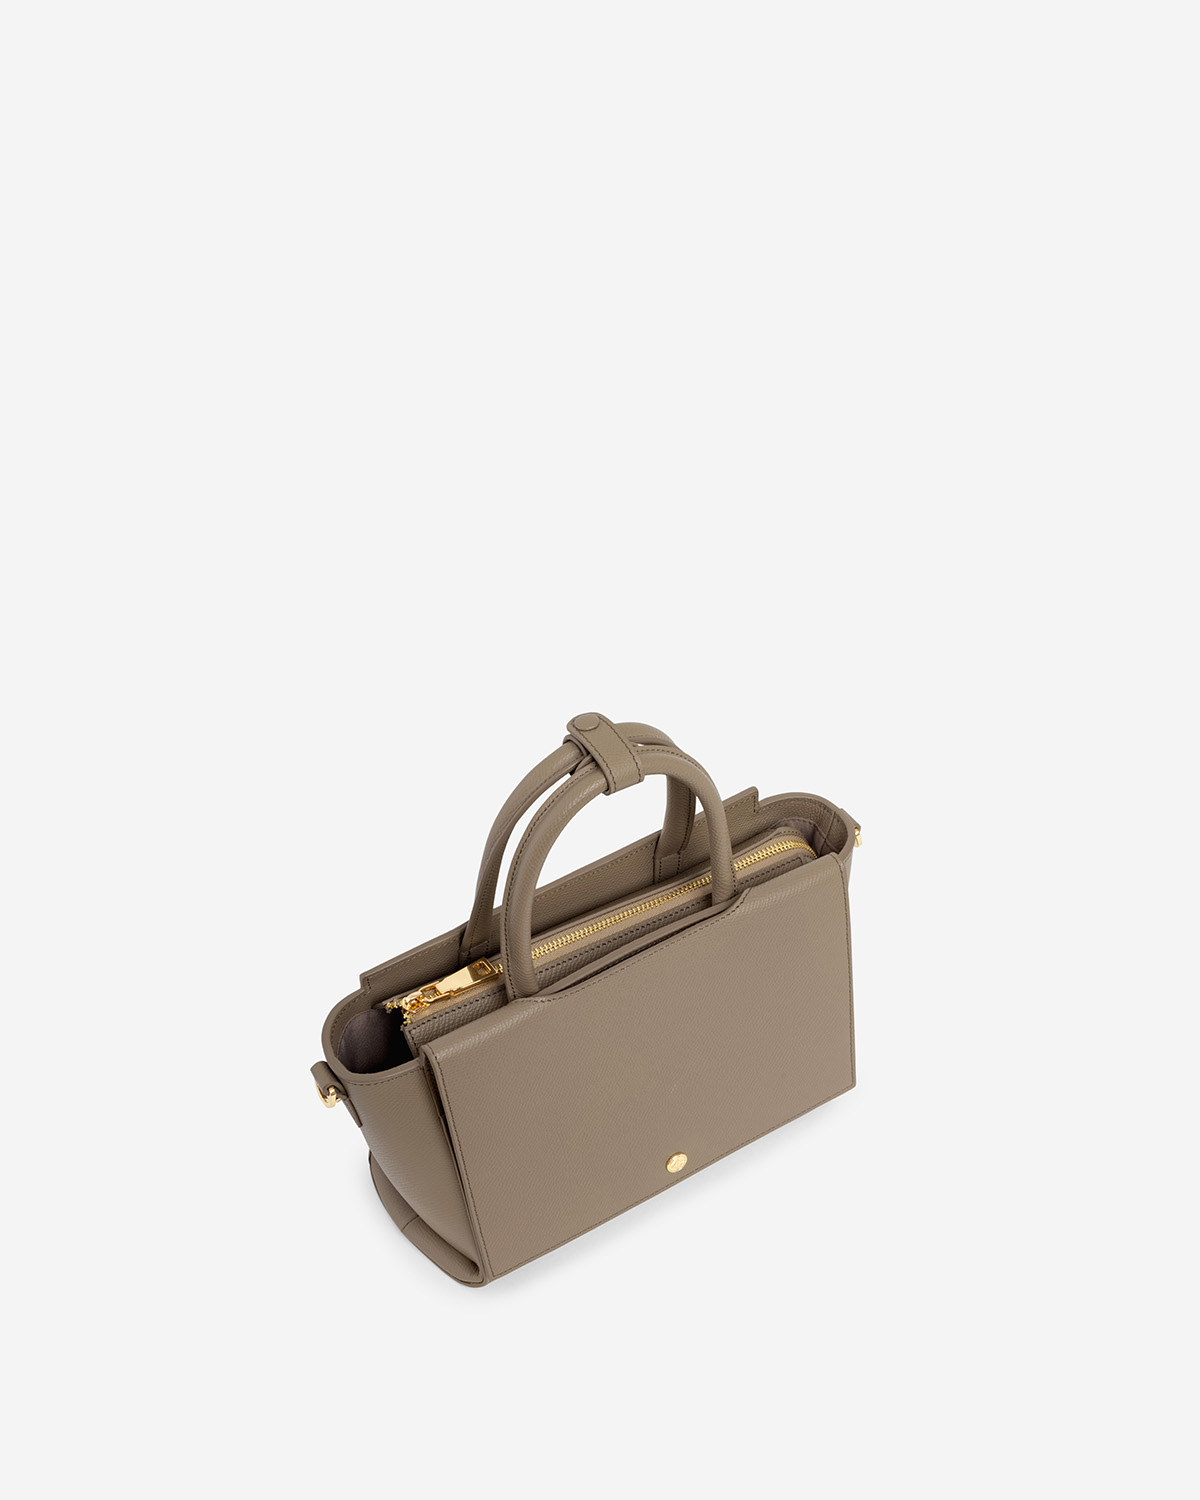 กระเป๋าถือหนังแท้ VERA Heidi Leather Handbag, ไซส์ 25 สี Taupe